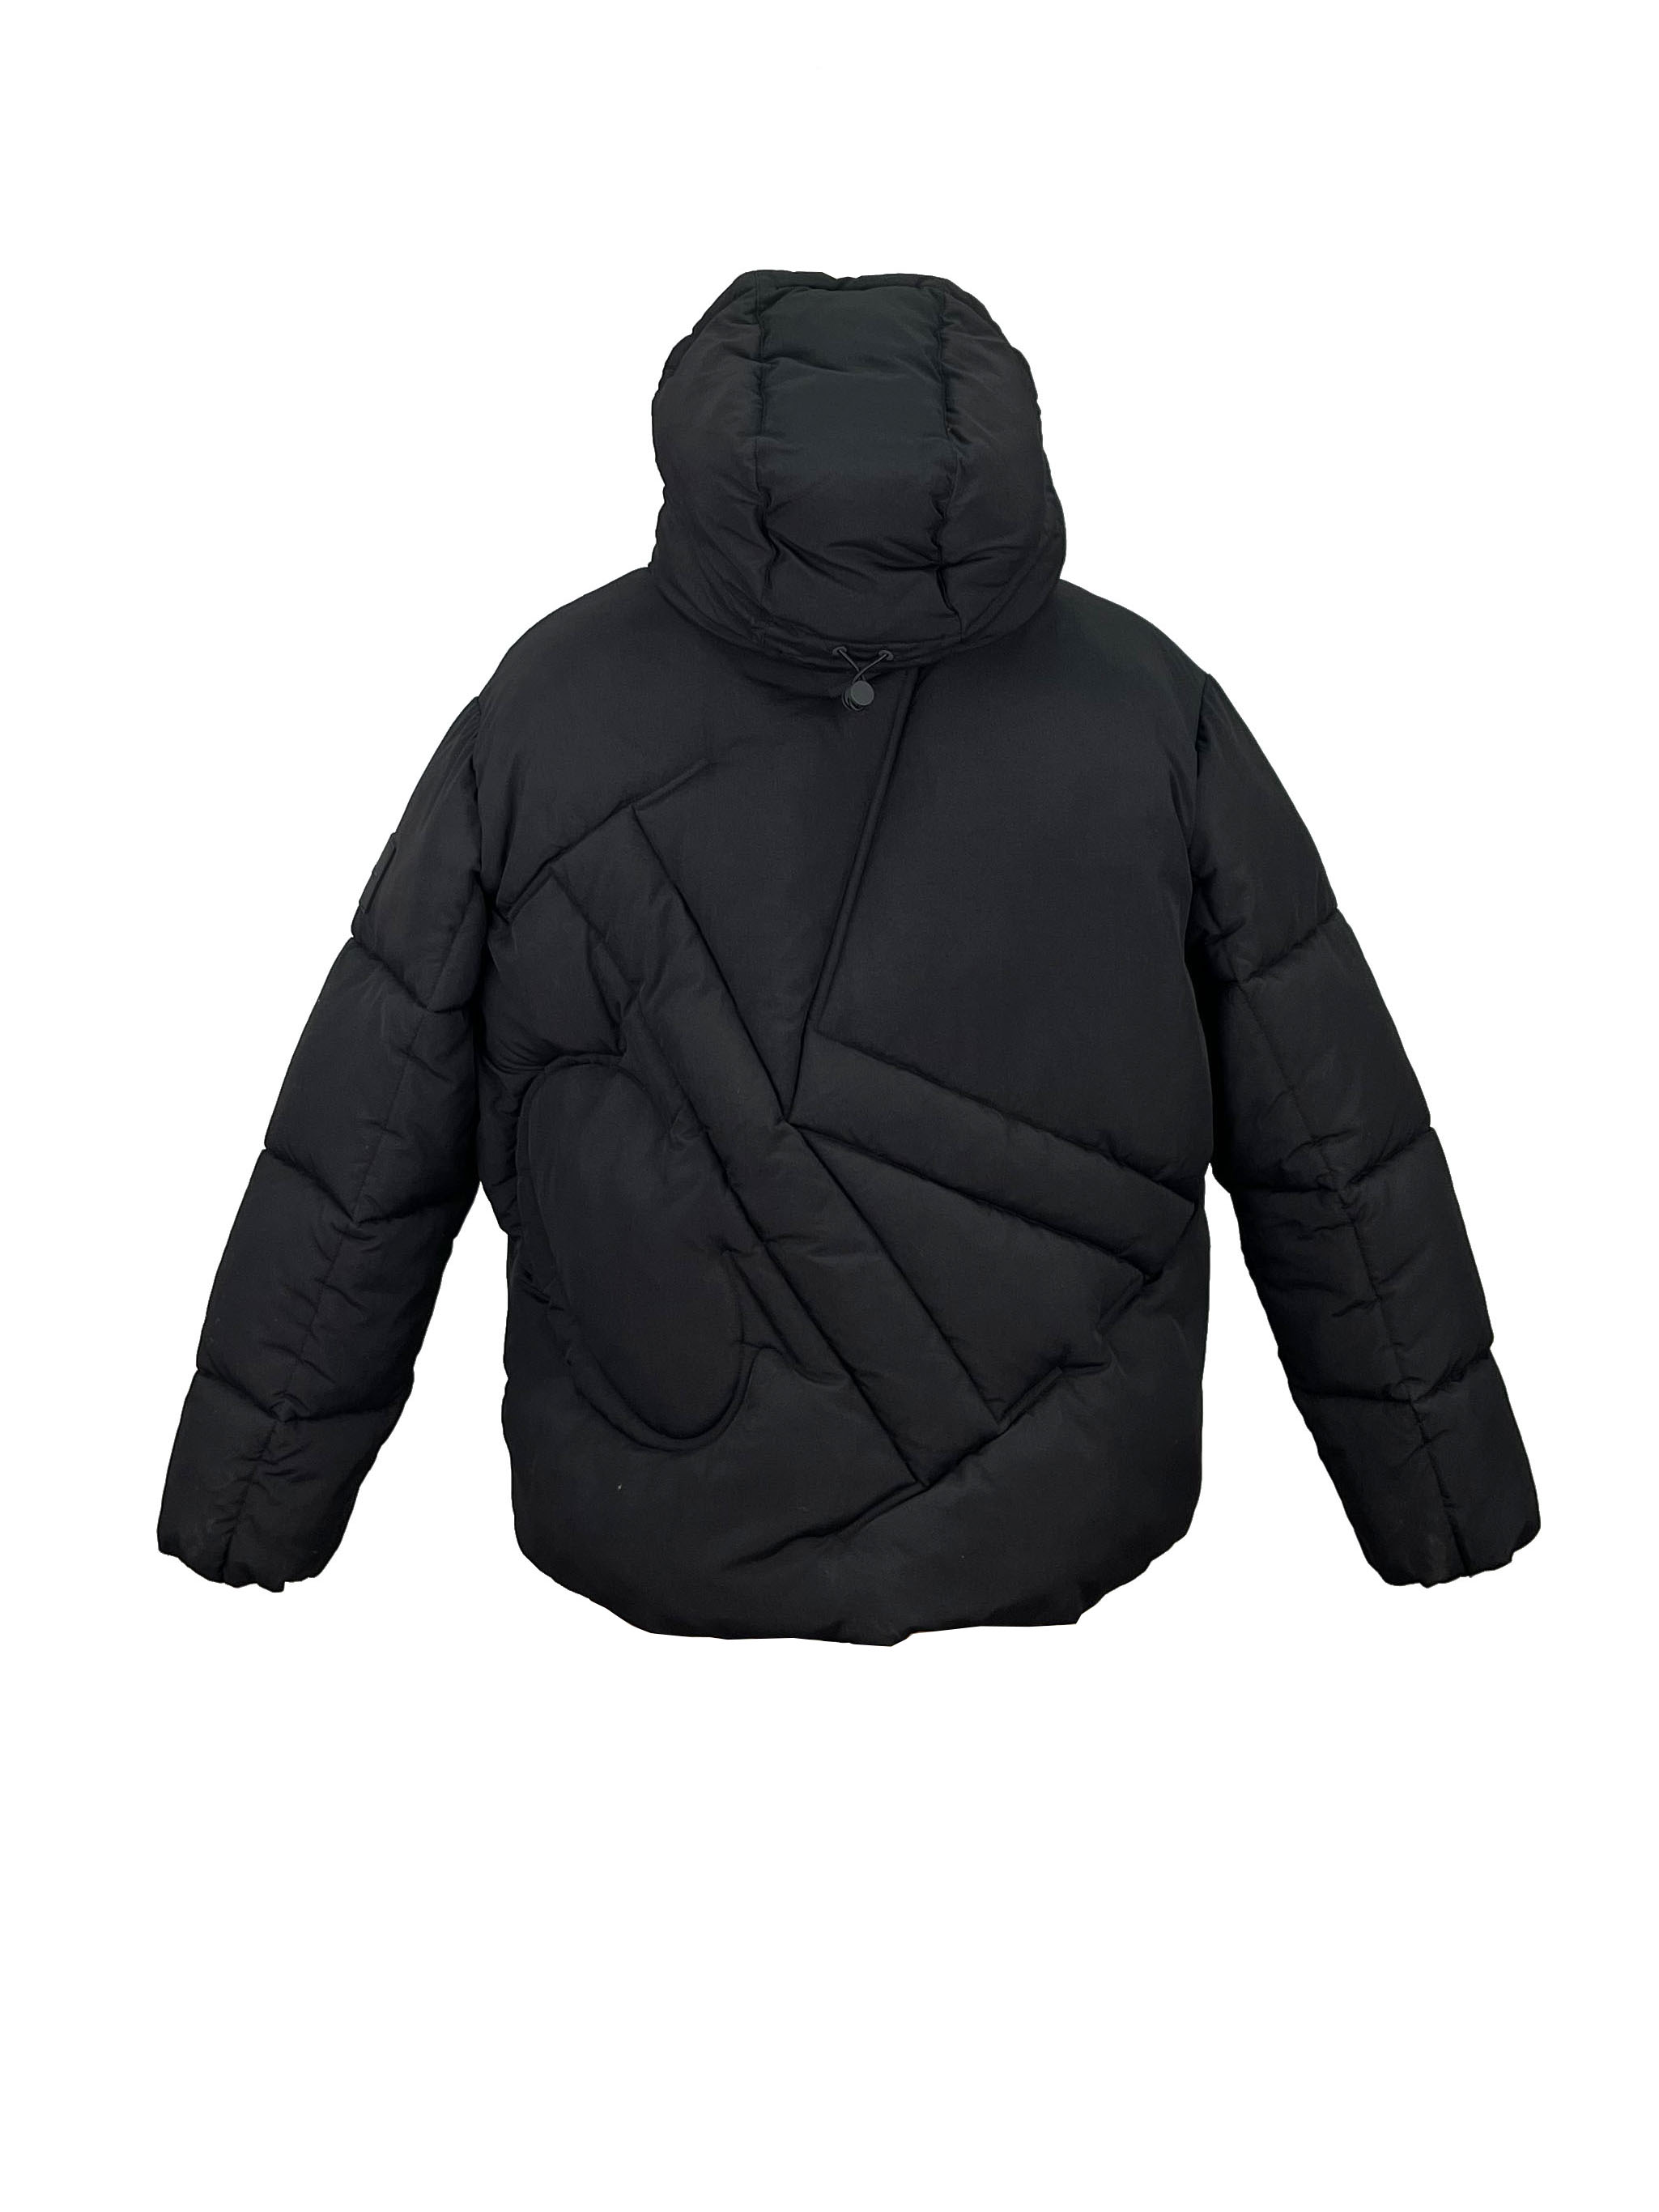 3.padded jacket. (3)